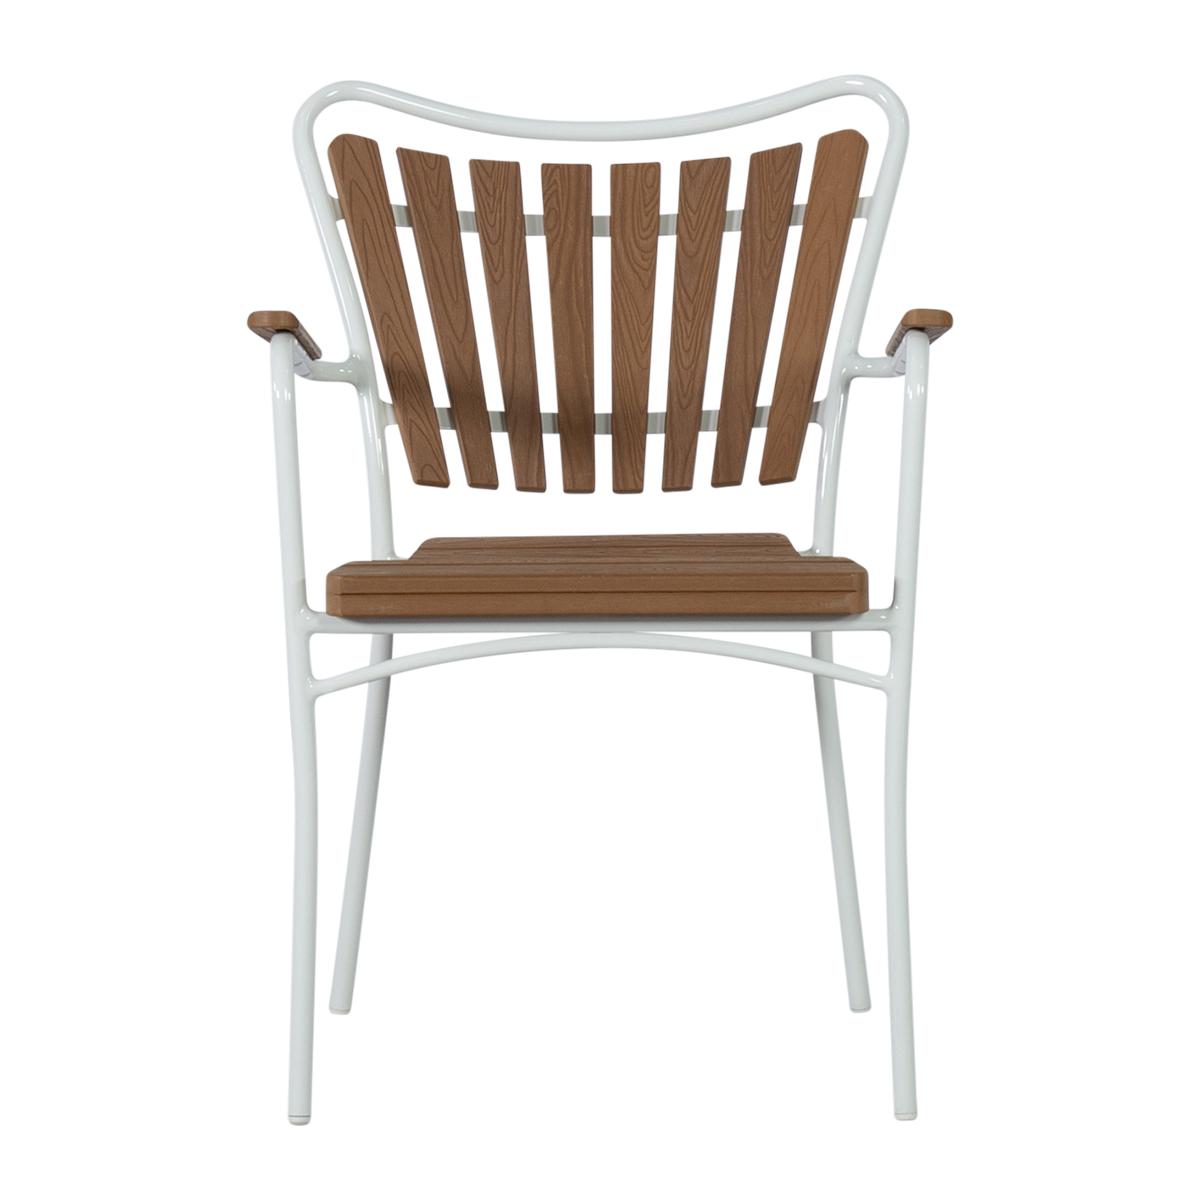 Cinas - Hard & Ellen Garden Chair - Polywood - White/Teak look (3515310)